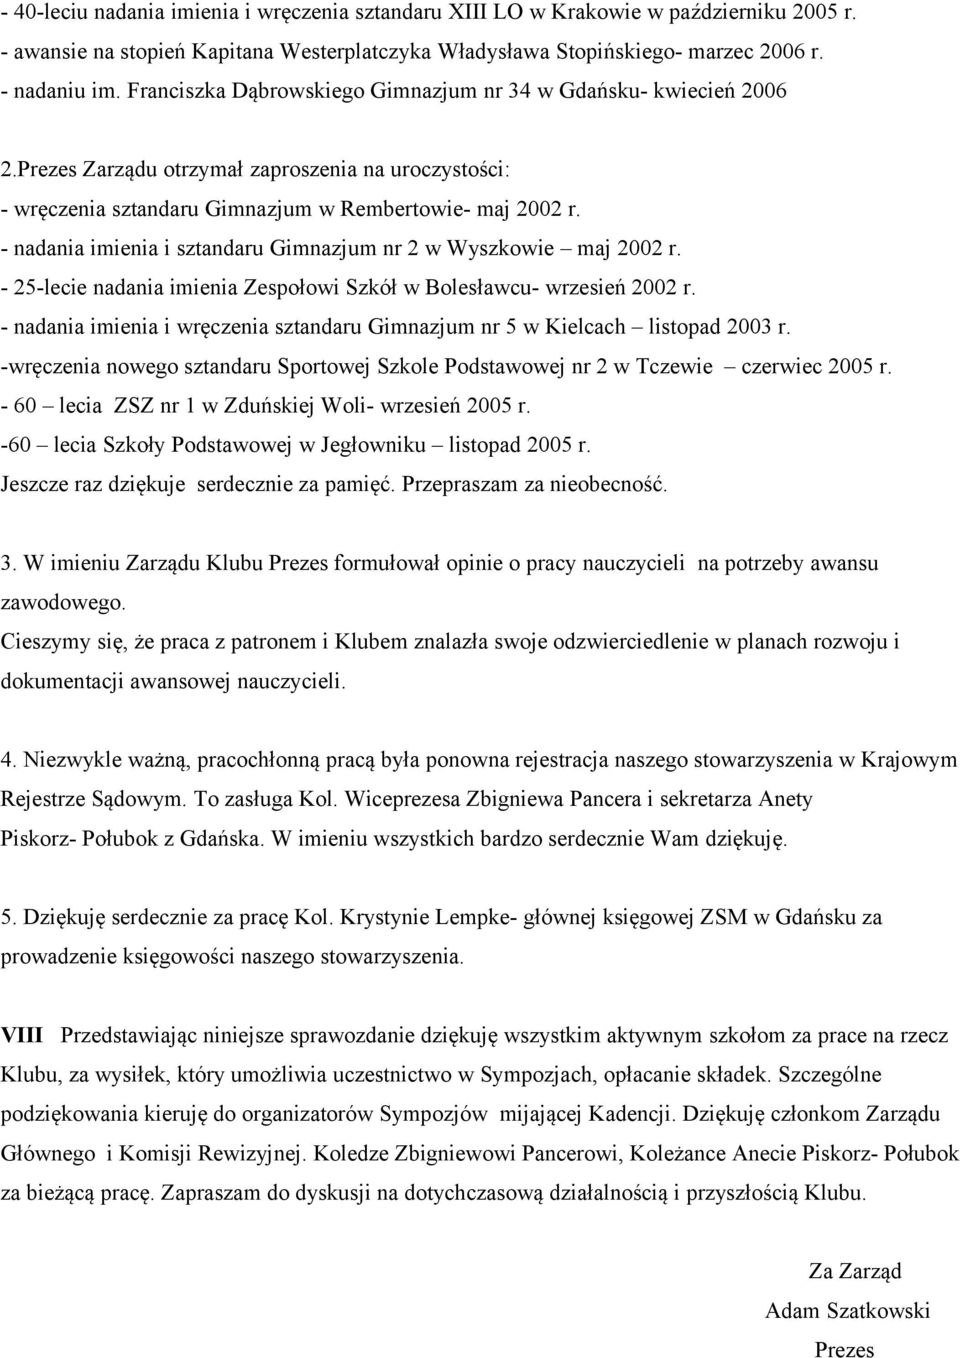 - nadania imienia i sztandaru Gimnazjum nr 2 w Wyszkowie maj 2002 r. - 25-lecie nadania imienia Zespołowi Szkół w Bolesławcu- wrzesień 2002 r.